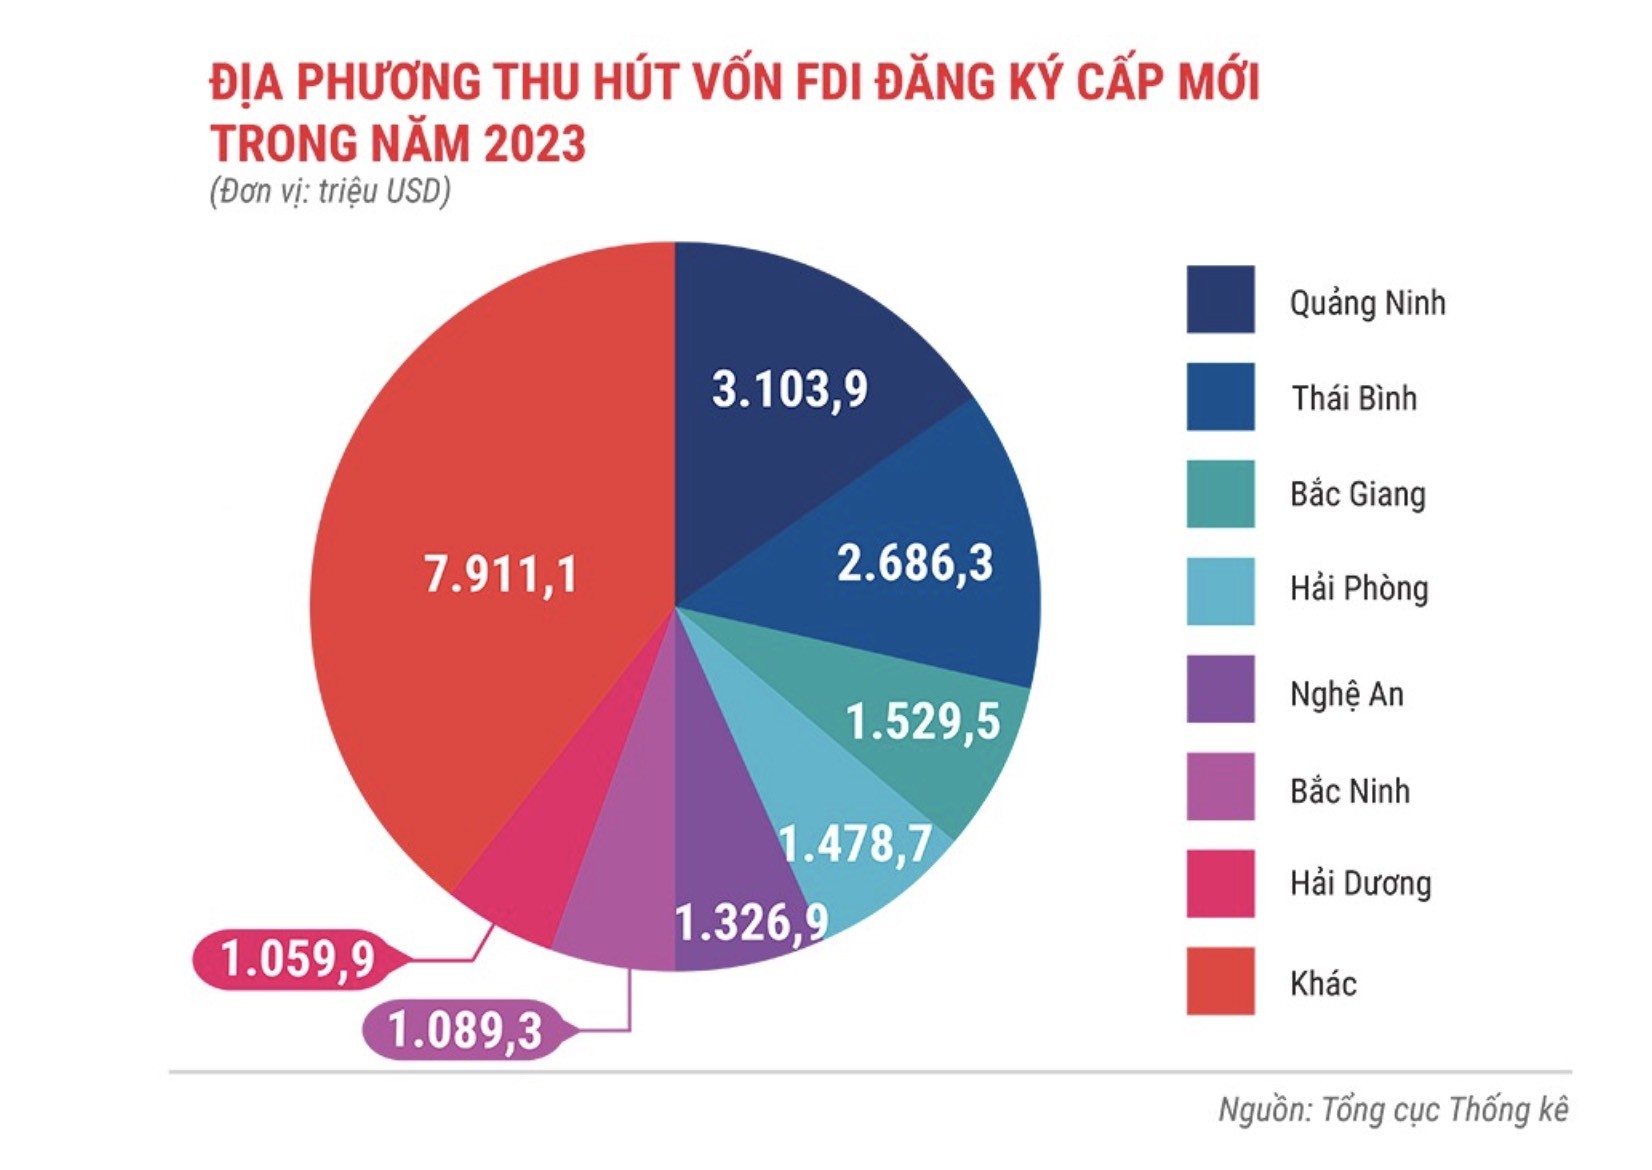 Việt Nam vẫn là "miền đất hứa" thu hút vốn FDI